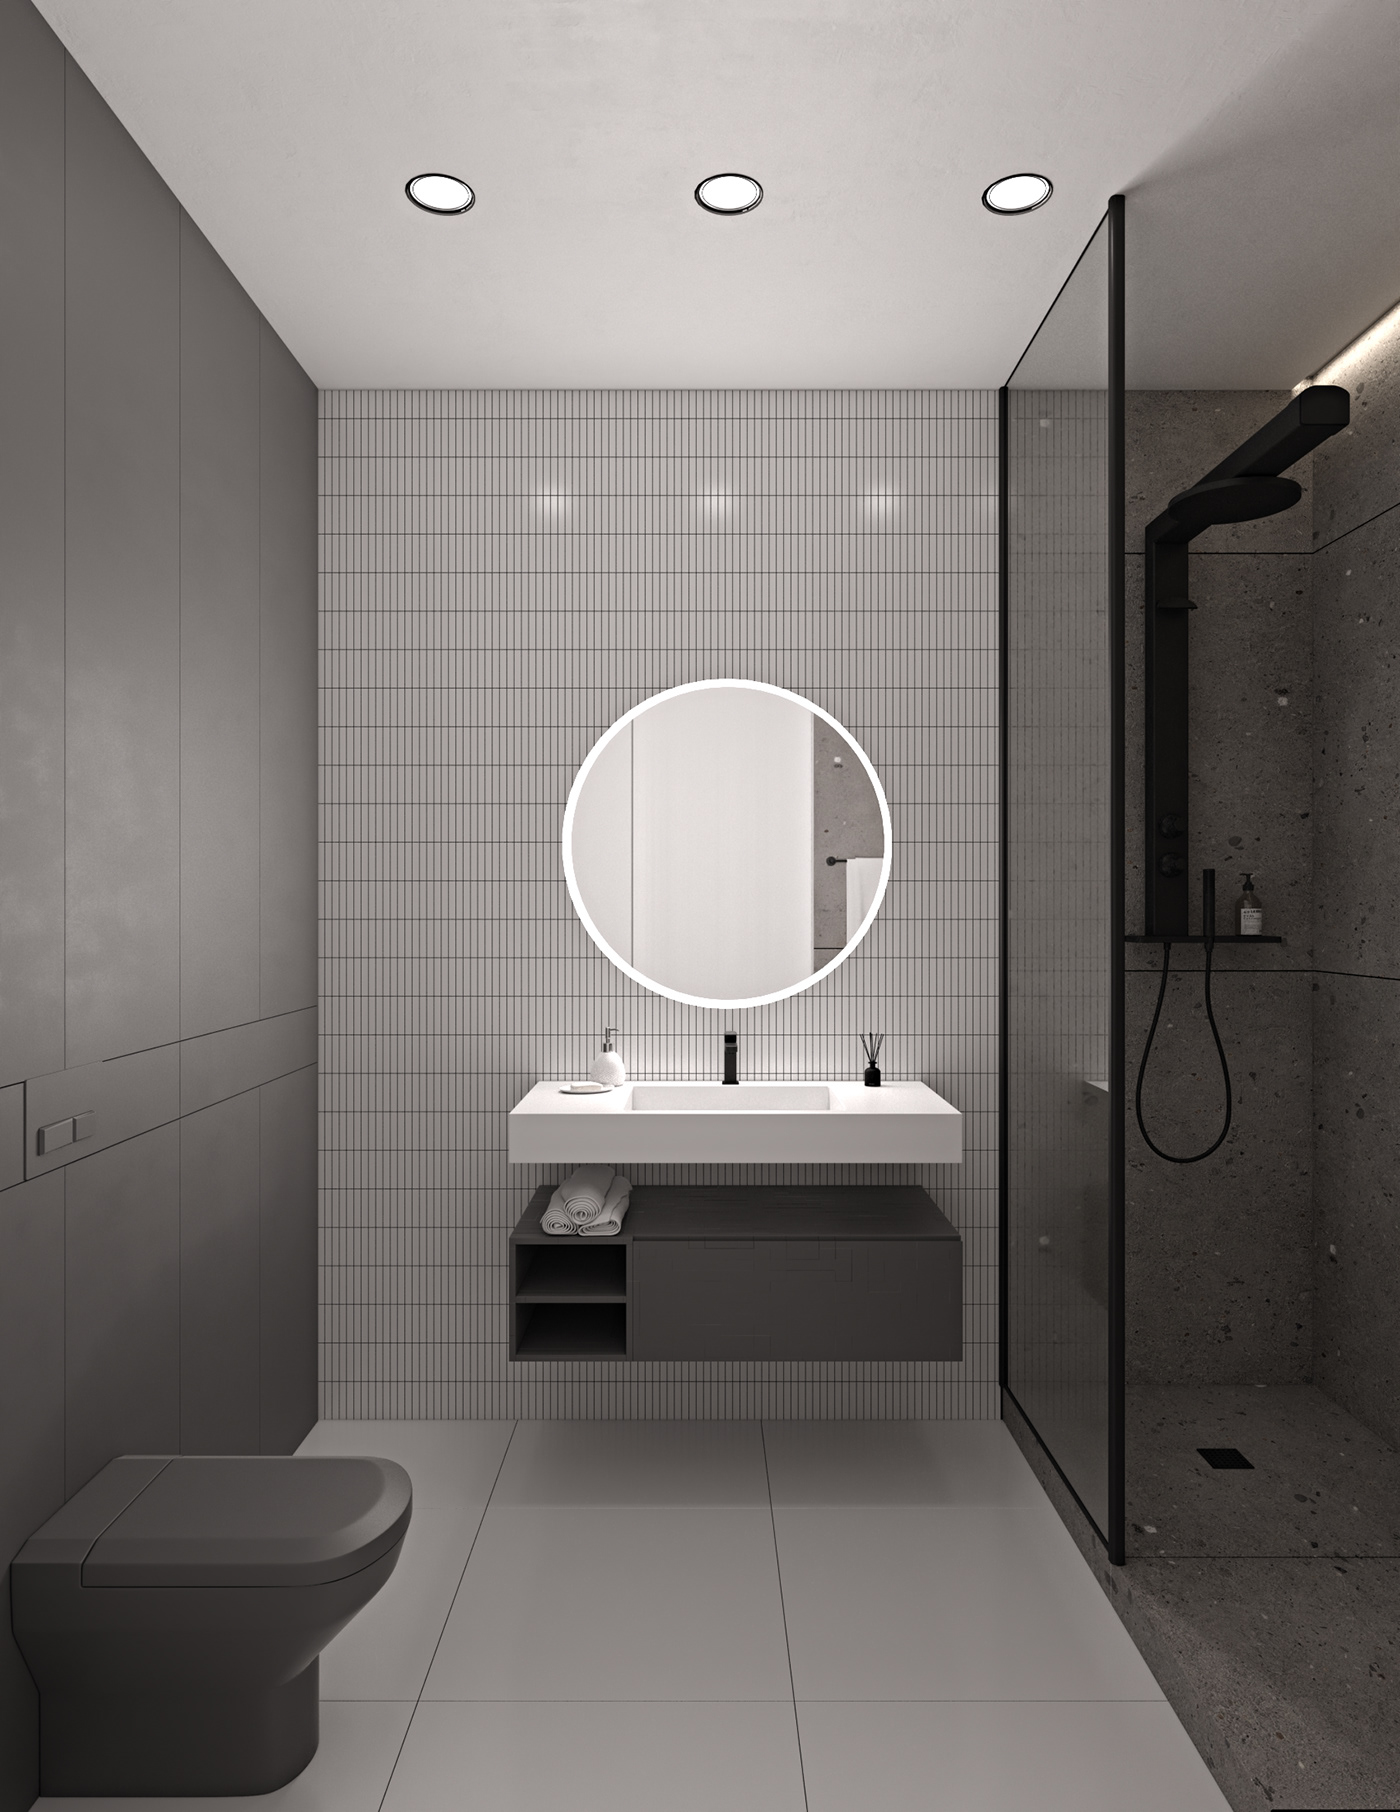 3ds max 3dsmax architecture interior design  interiordesign minimal modern Render visualization vray